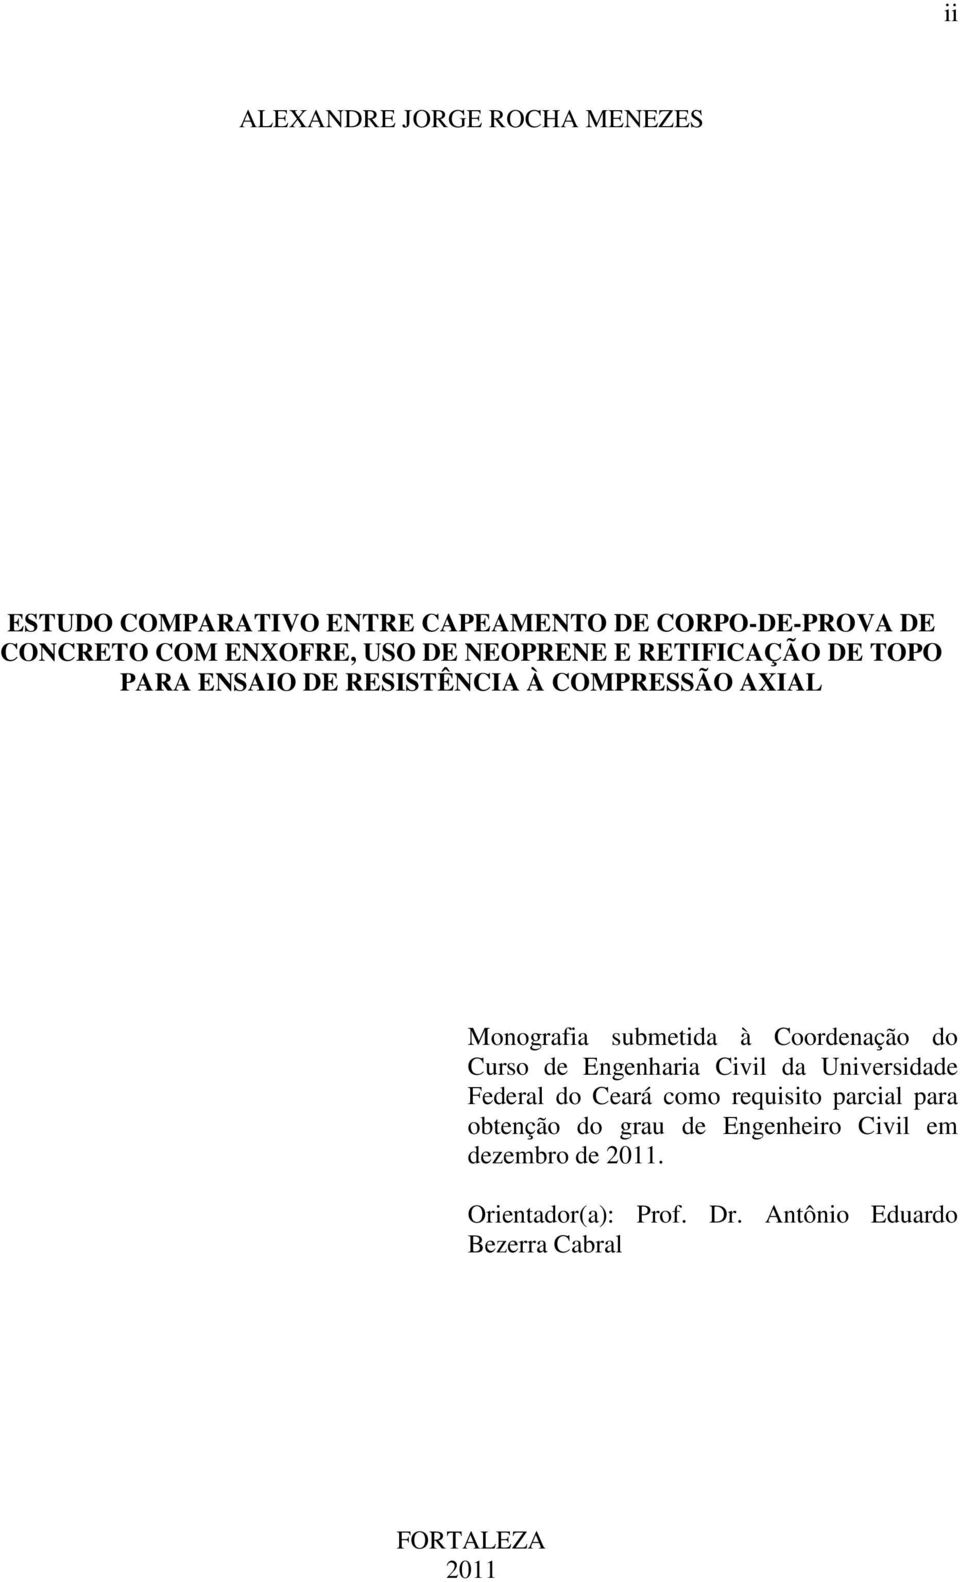 Coordenação do Curso de Engenharia Civil da Universidade Federal do Ceará como requisito parcial para obtenção